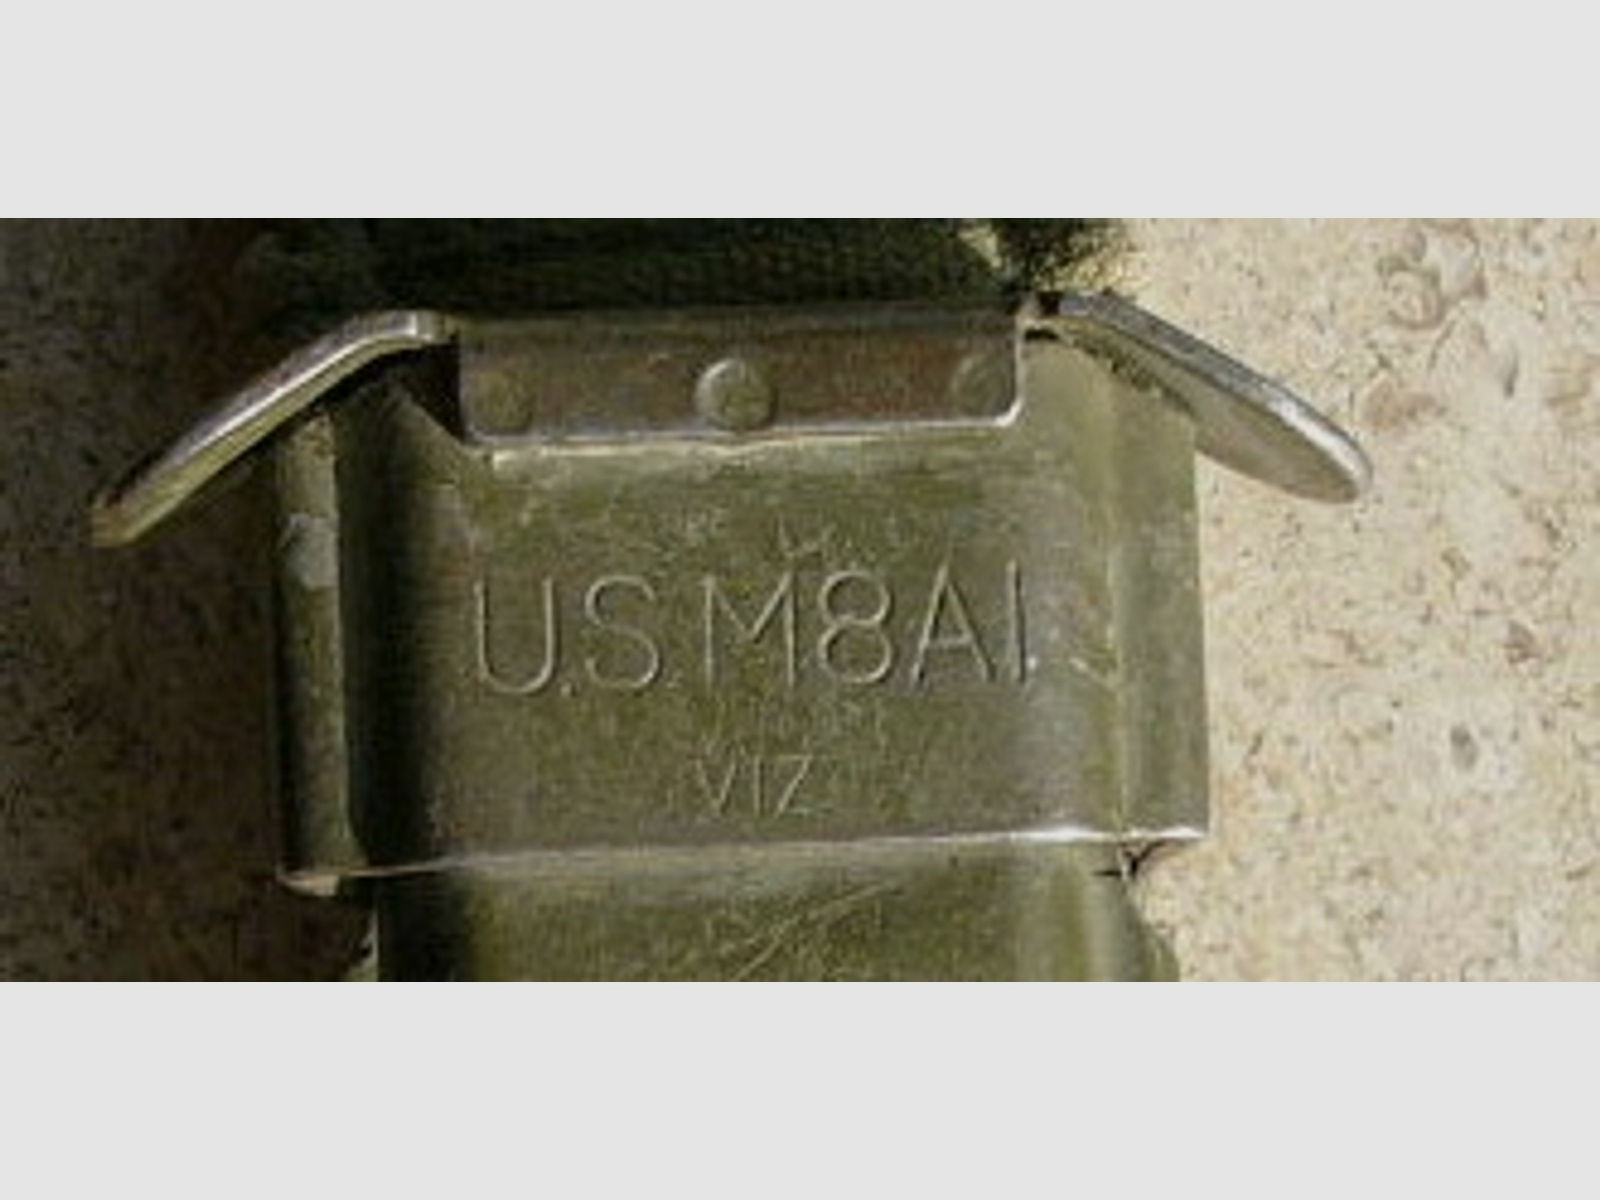 Originale Scheide zu US M7 Bajonett, Vietnamzeit